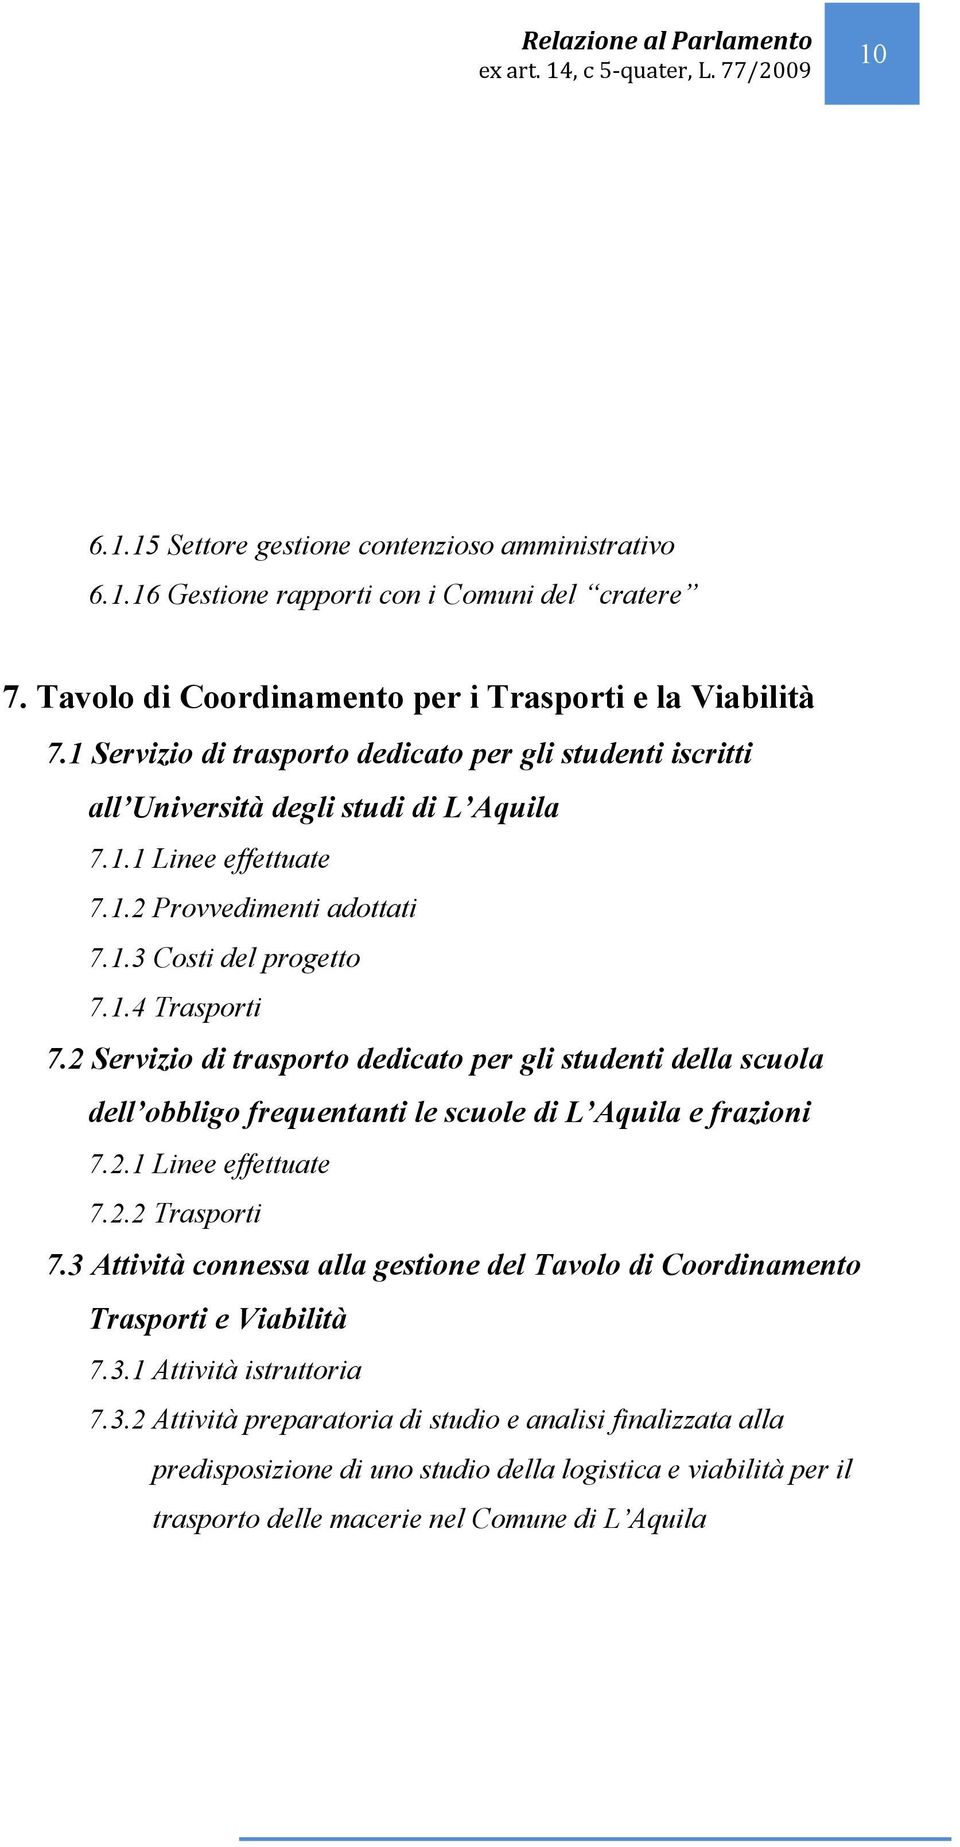 2 Servizio di trasporto dedicato per gli studenti della scuola dell obbligo frequentanti le scuole di L Aquila e frazioni 7.2.1 Linee effettuate 7.2.2 Trasporti 7.